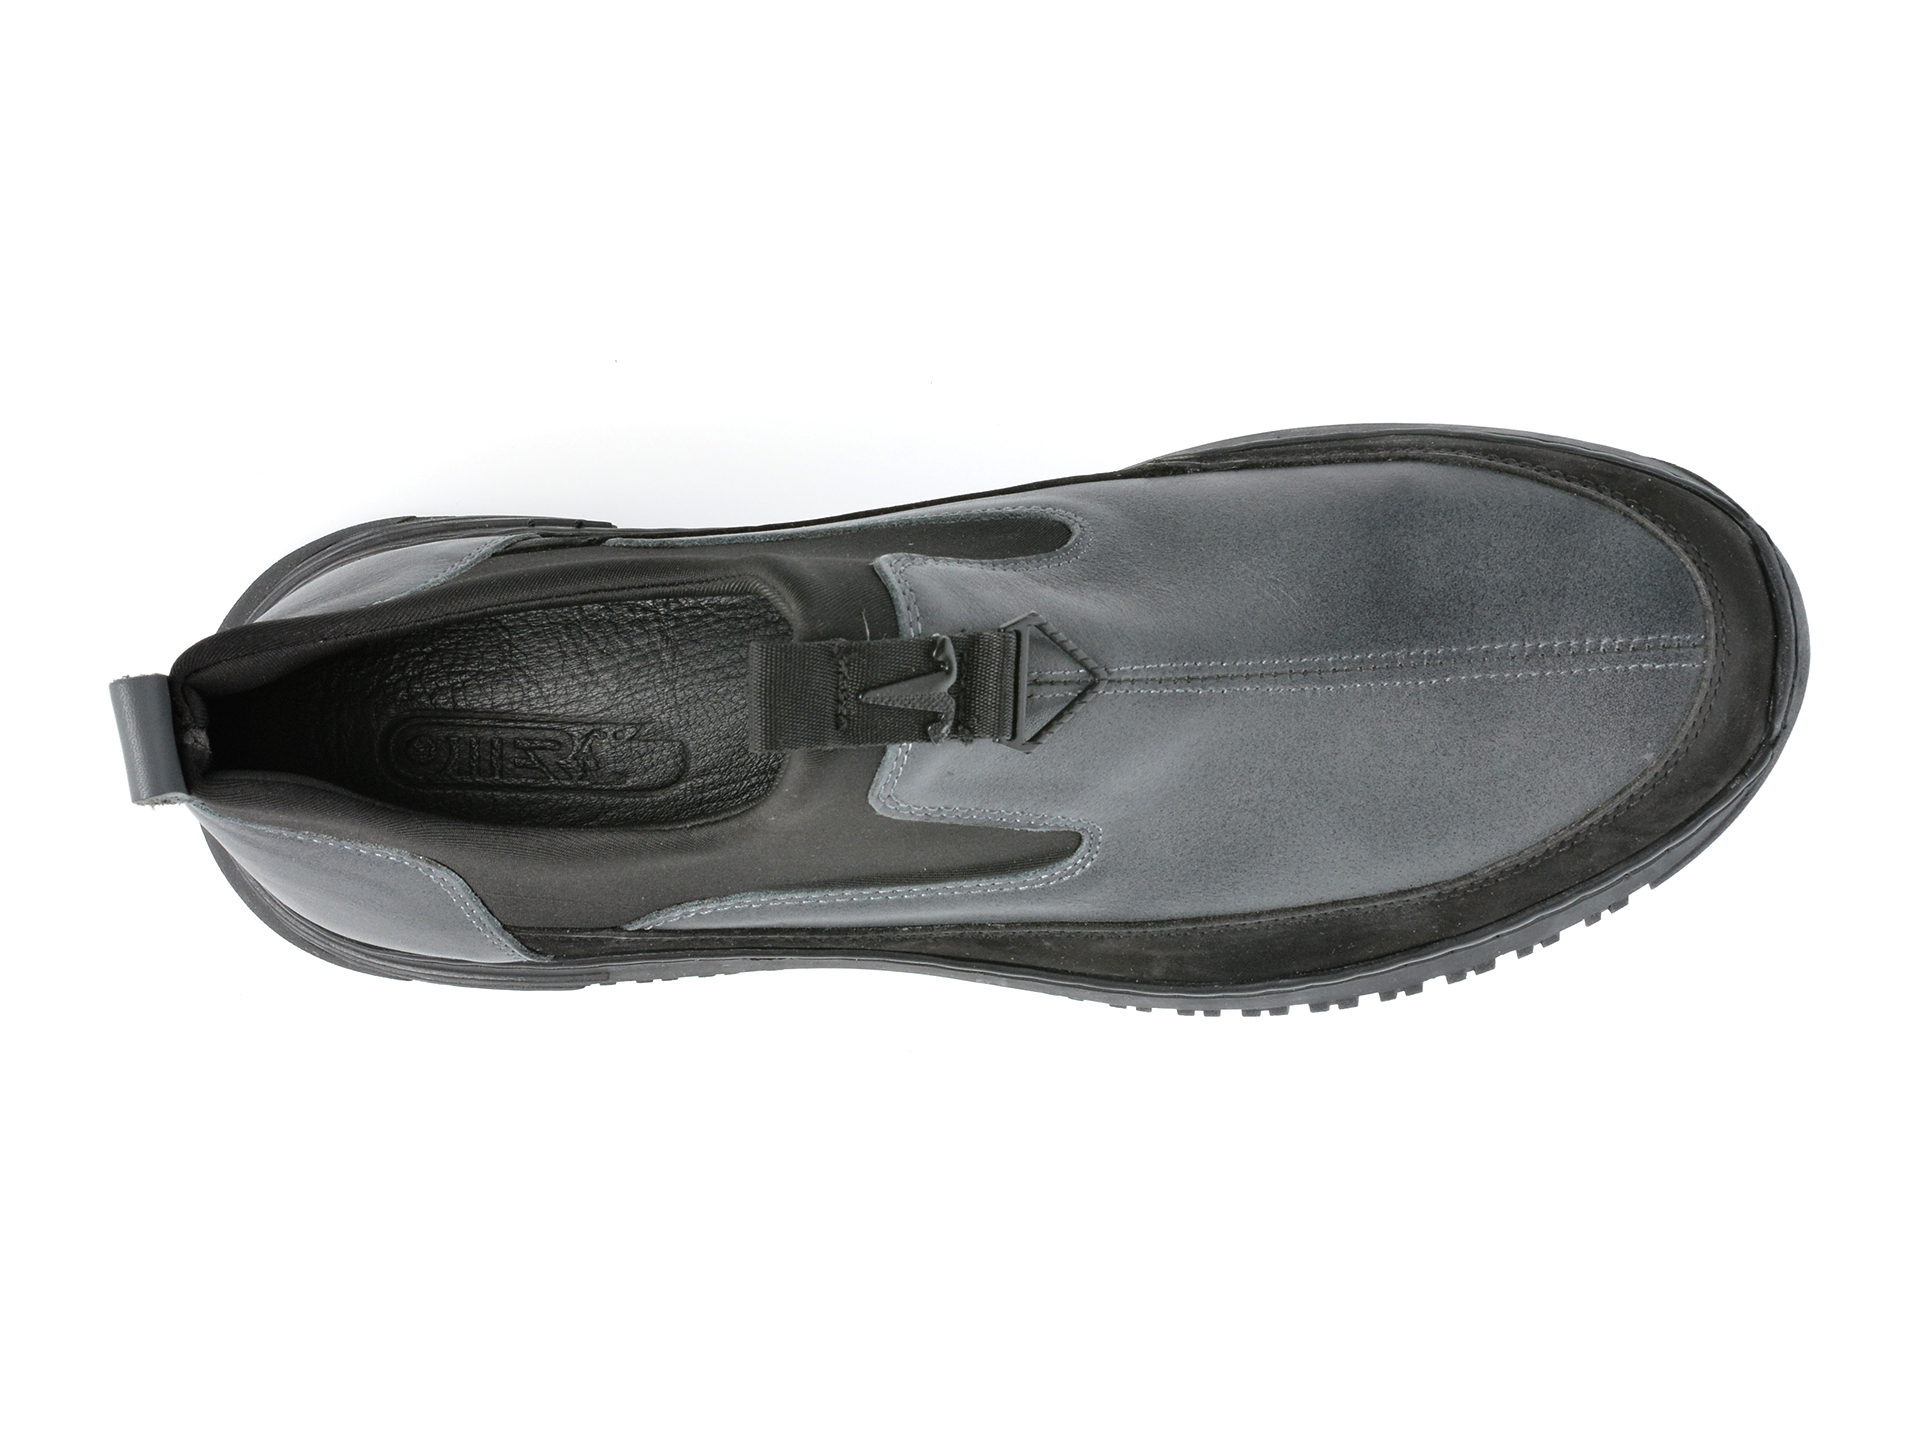 Poze Pantofi OTTER gri, RBY2400, din piele naturala Tezyo